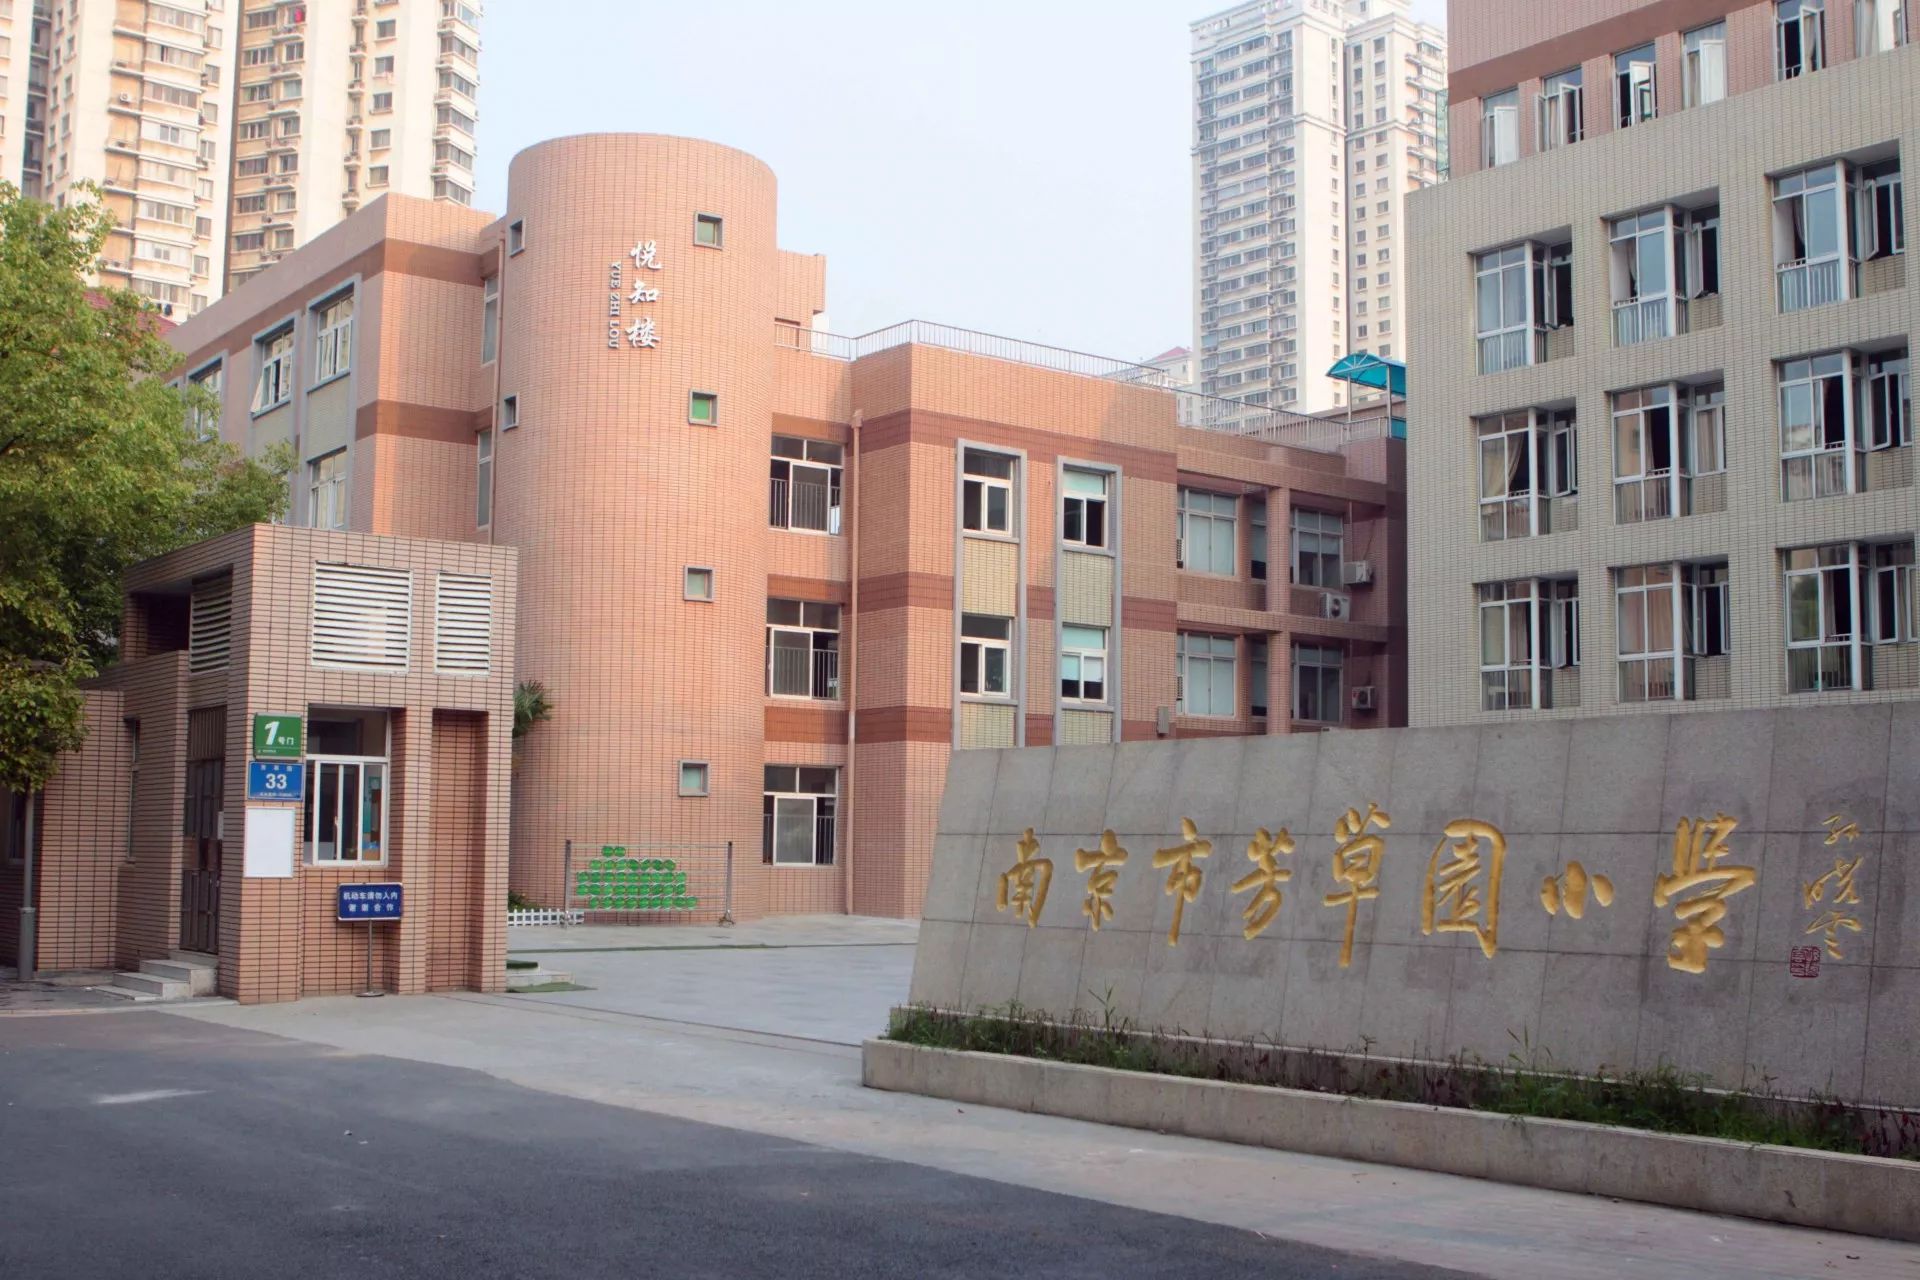 南京市芳草园小学位于人文荟萃,教育资源丰富的南京市龙江地区秦淮河